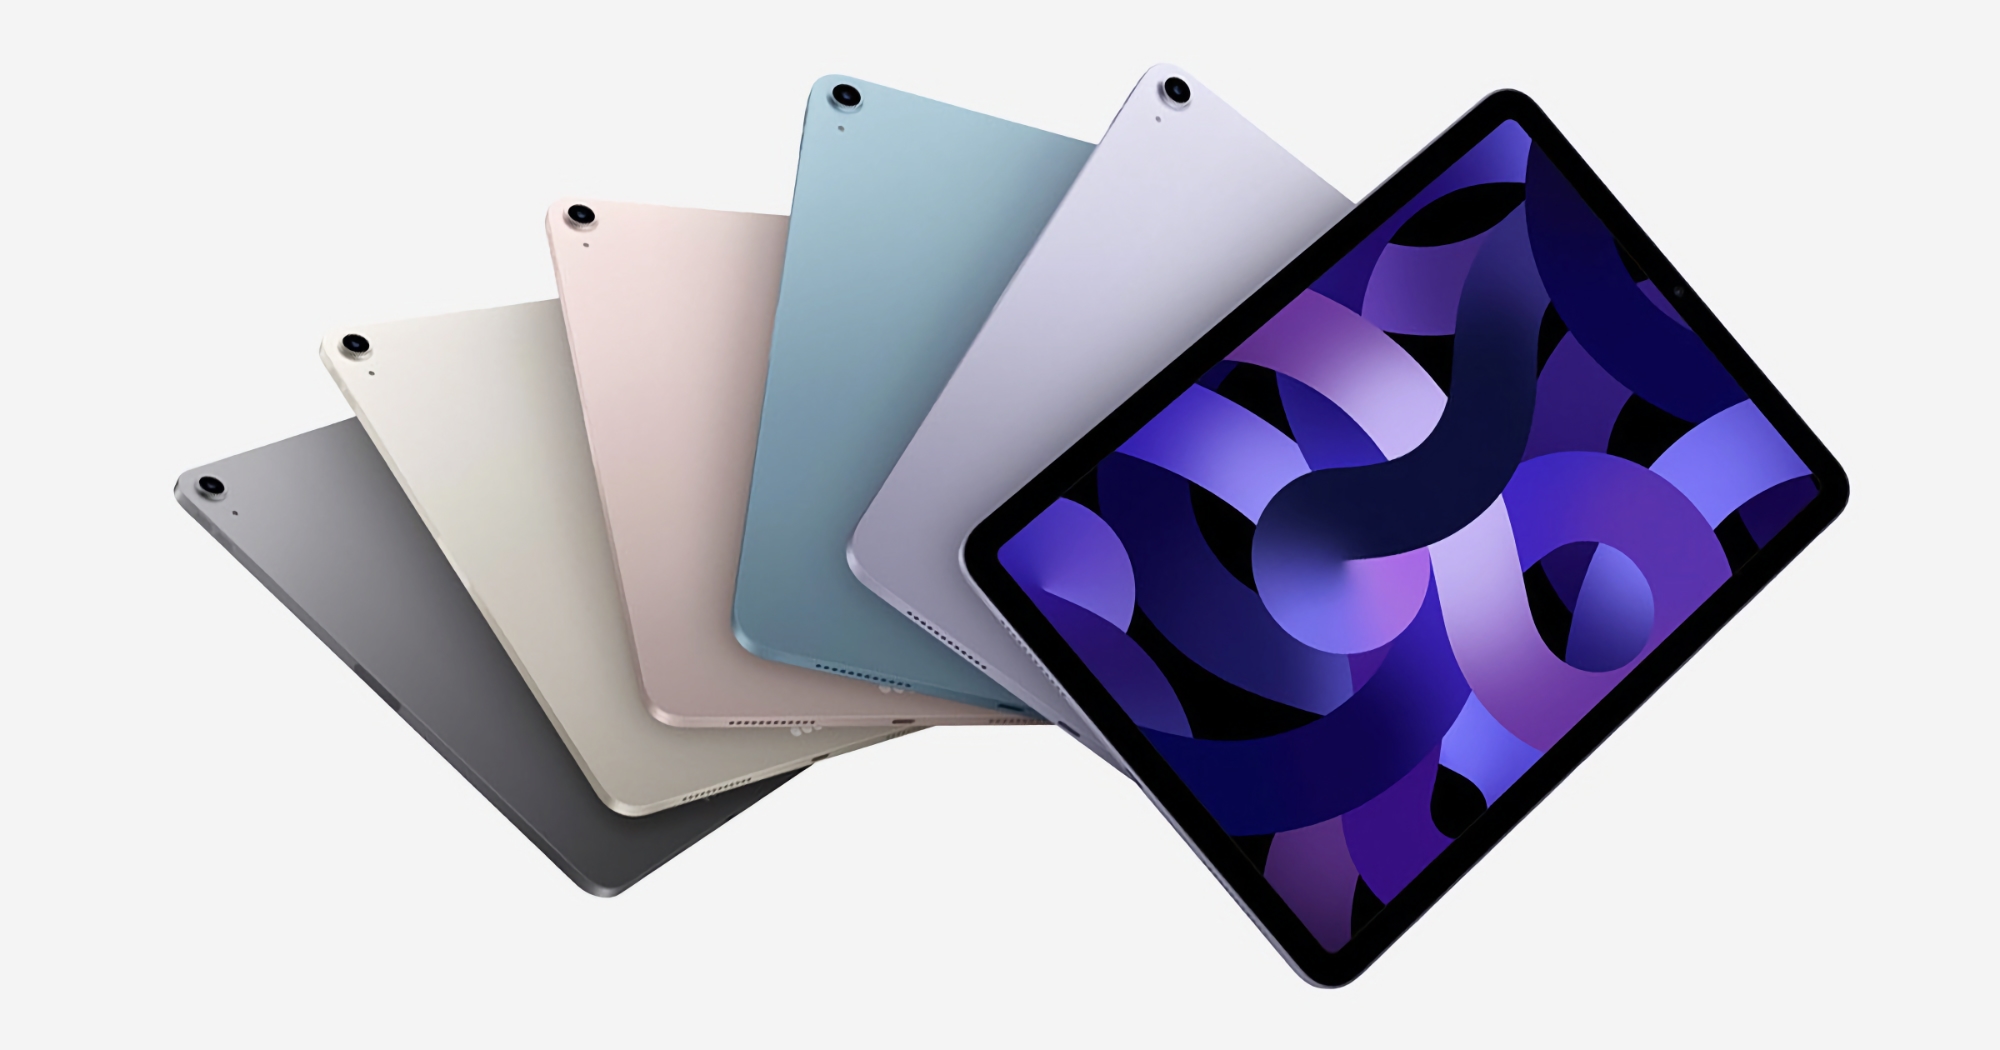 Oferta del día: iPad Air con chip M1 disponible con 100 dólares de descuento en Amazon